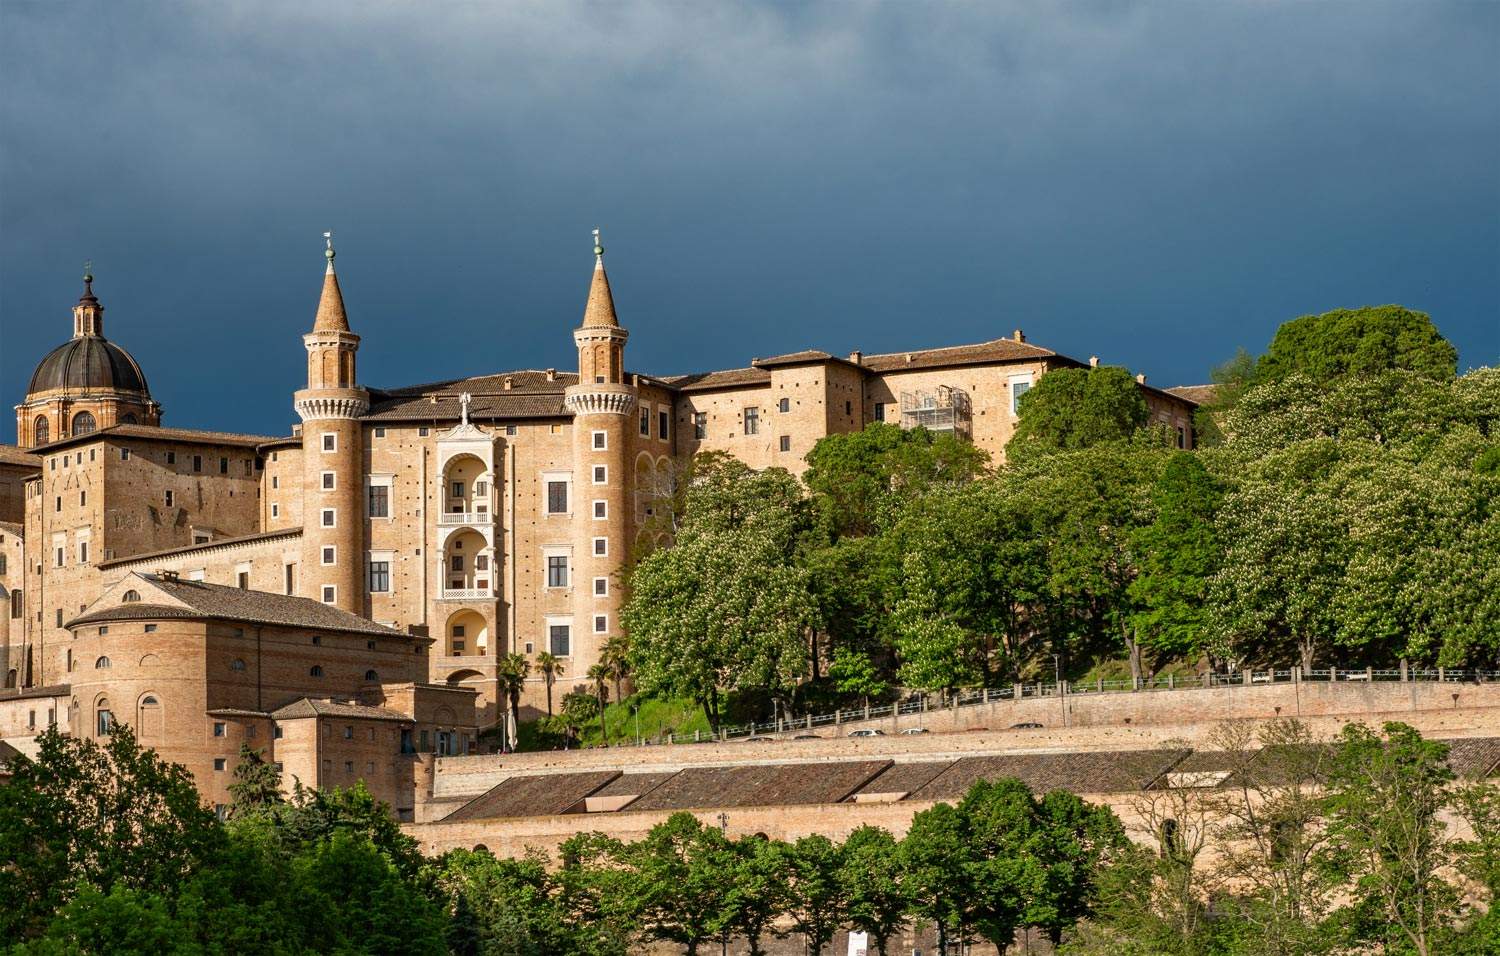 Urbino, que voir : les 10 lieux à visiter dans la ville de la Renaissance